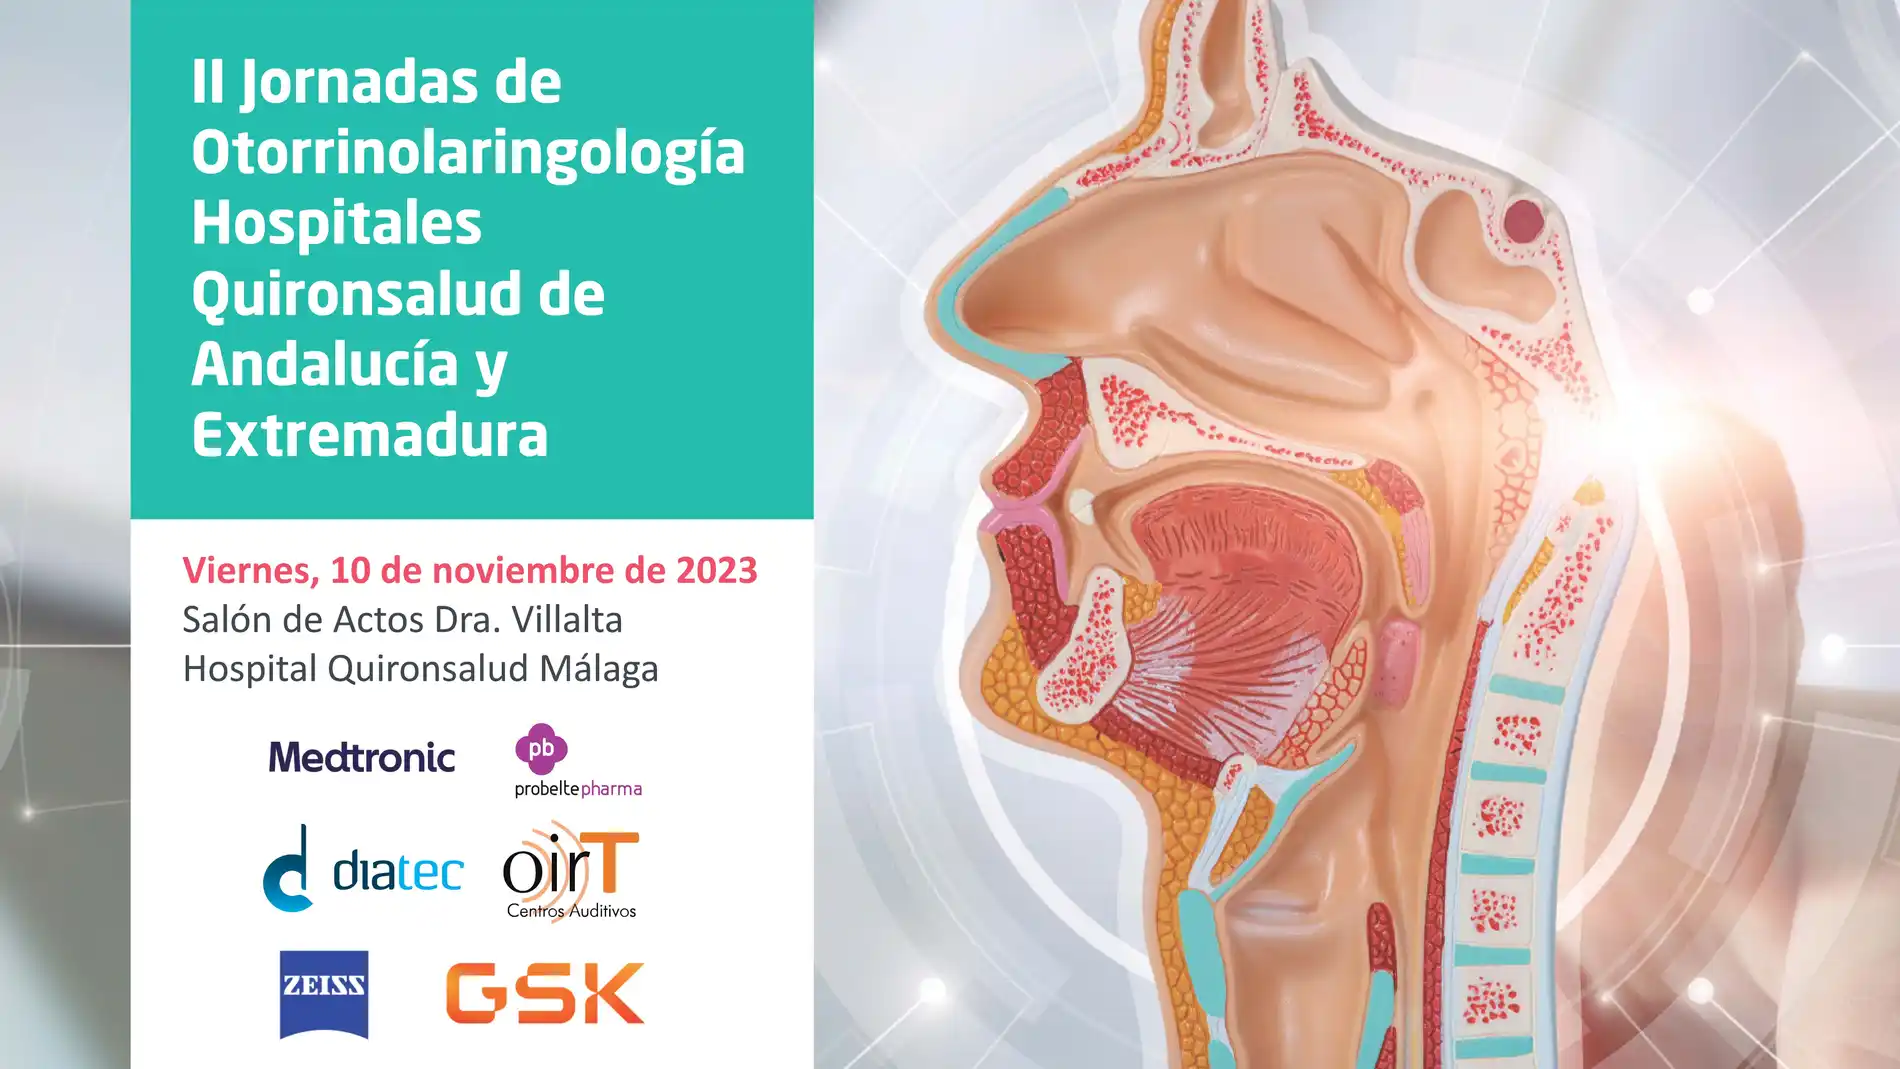 Más de 30 especialistas de otorrinolaringología de Quirónsalud se reúnen en una jornada científica en Málaga